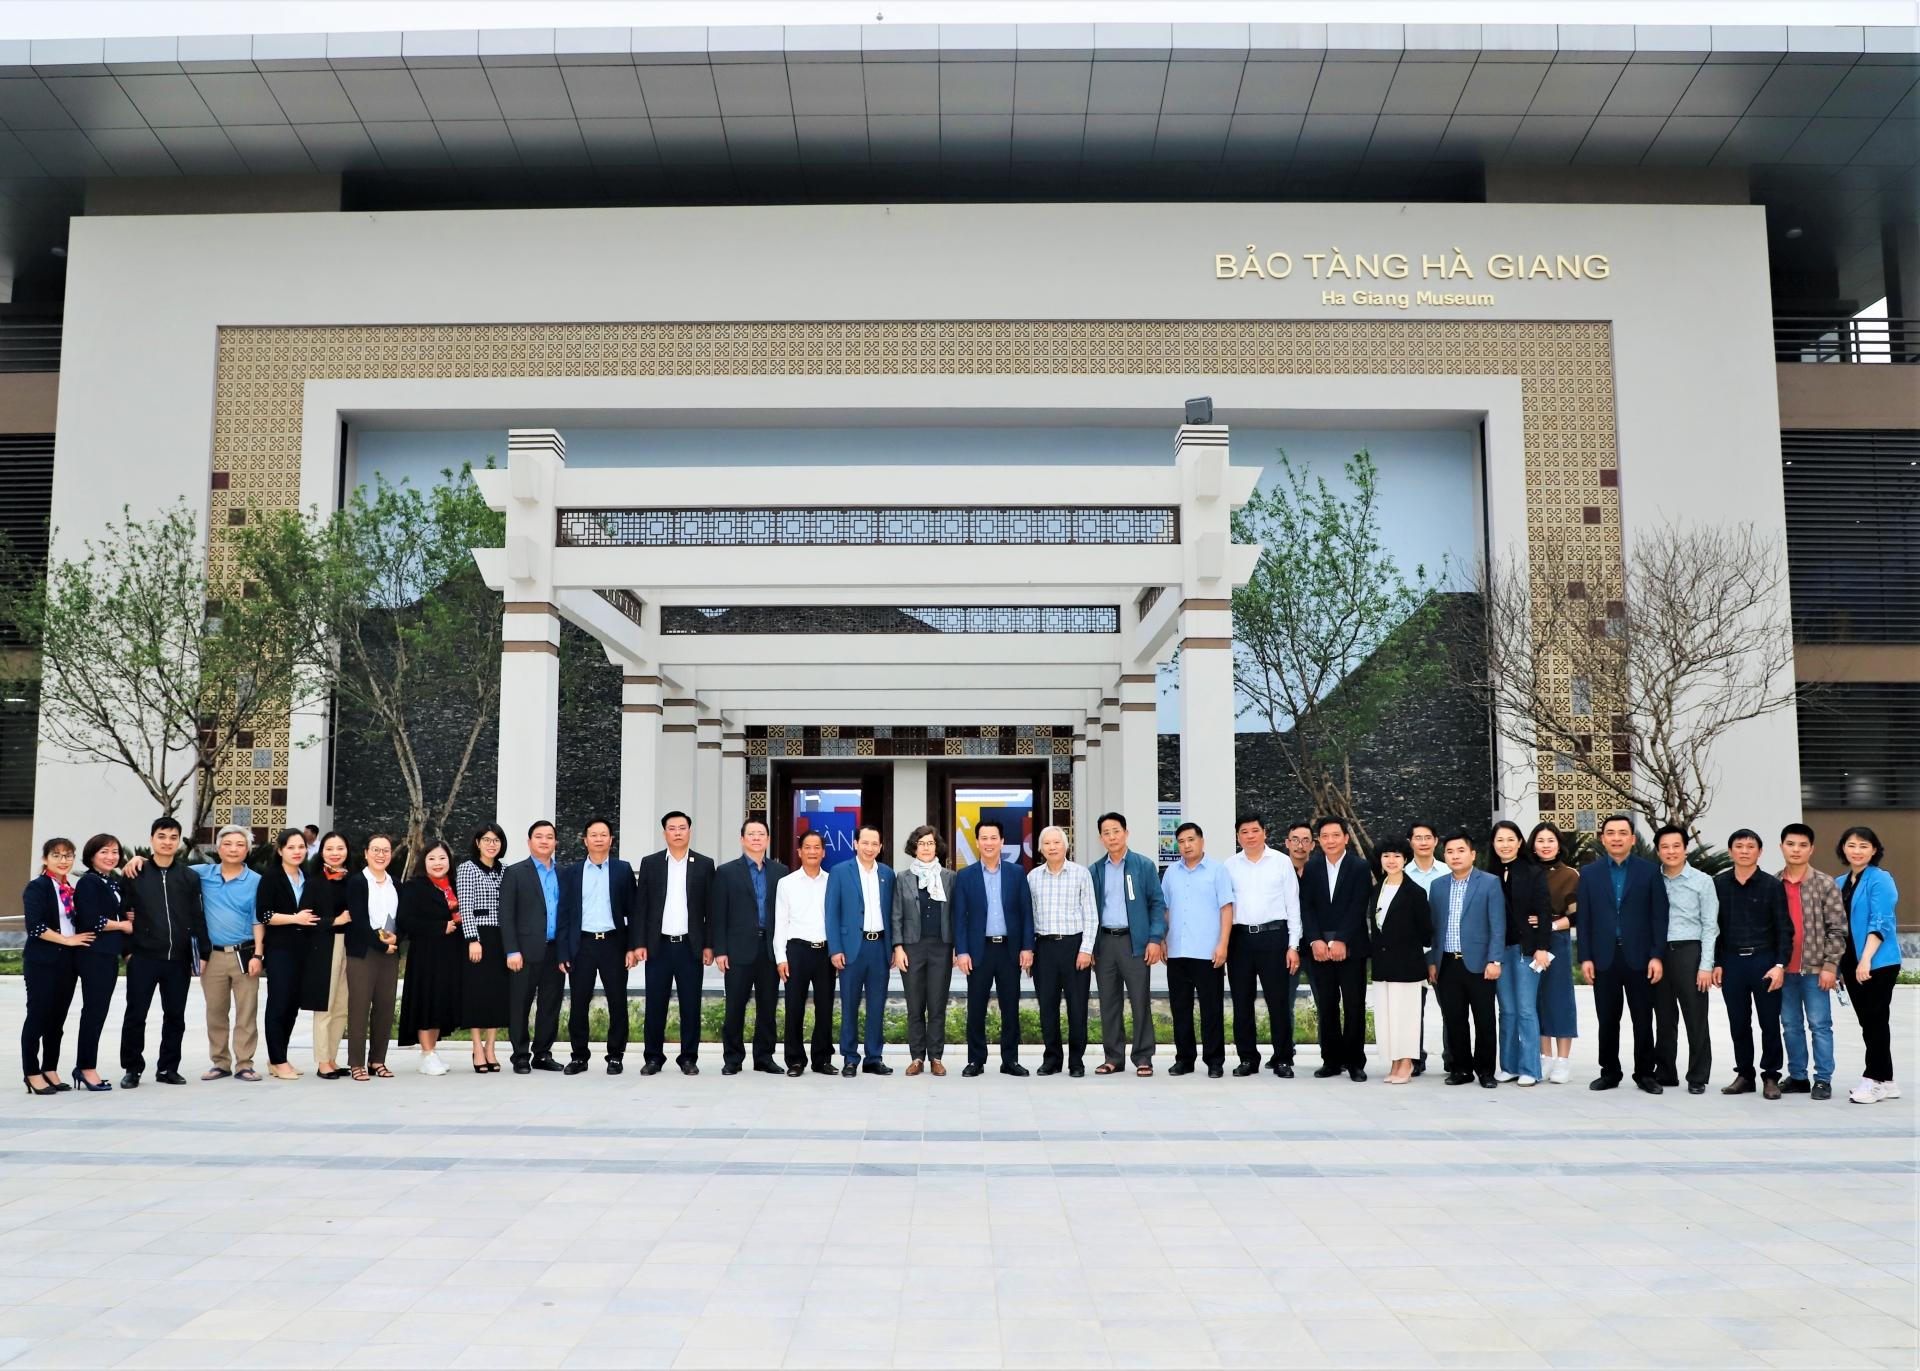 Bí thư Tỉnh ủy Đặng Quốc Khánh cùng các đồng chí lãnh đạo tỉnh chụp ảnh lưu niệm với đơn vị tư vấn và nhà thầu thi công dự án cùng cán bộ, lãnh đạo Bảo tàng tỉnh.